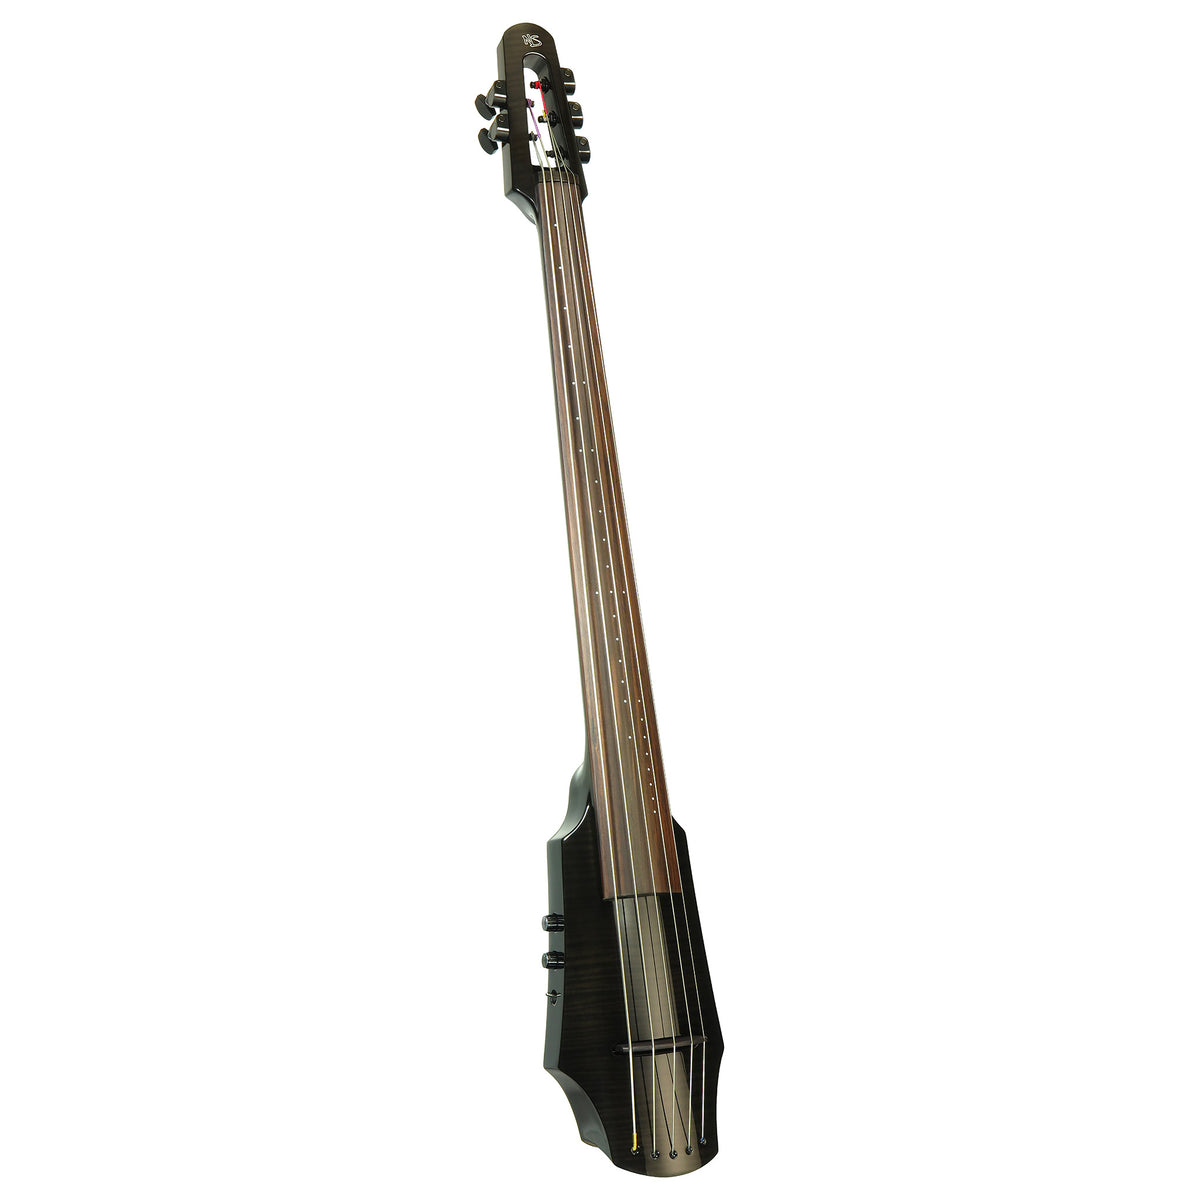 NS Design WAV 5-string Electric Cello